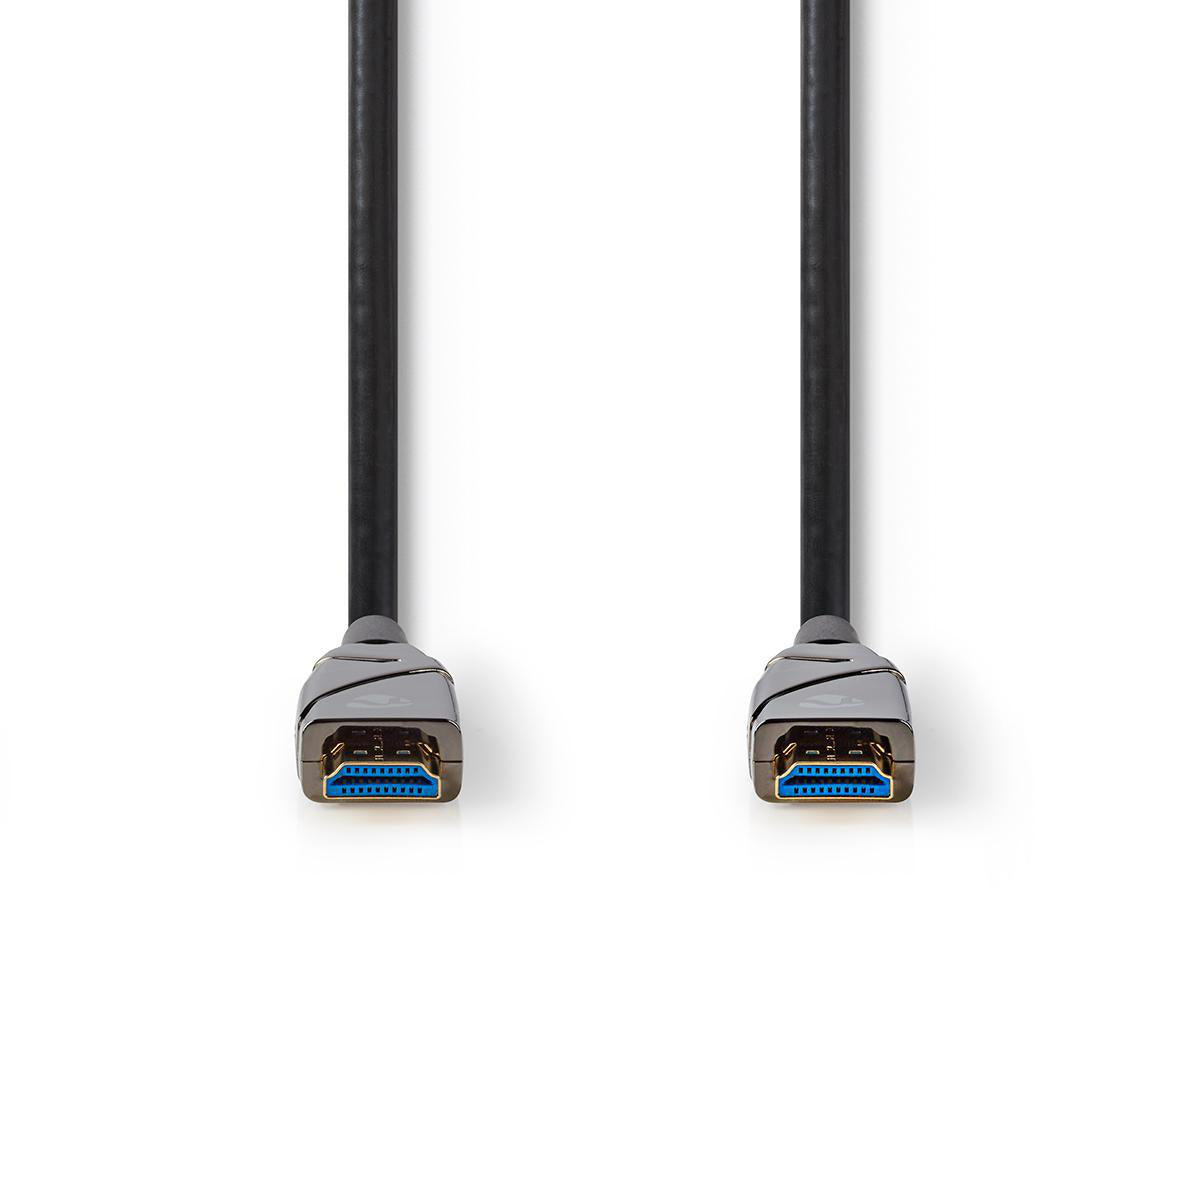 Aktive optische High Speed HDMI-Kabel mit Ethernet | HDMI™ Stecker | HDMI™ Stecker | 4K@60Hz | 18 Gbps | 15.0 m | Rund | PVC | Schwarz | Kartonverpackung